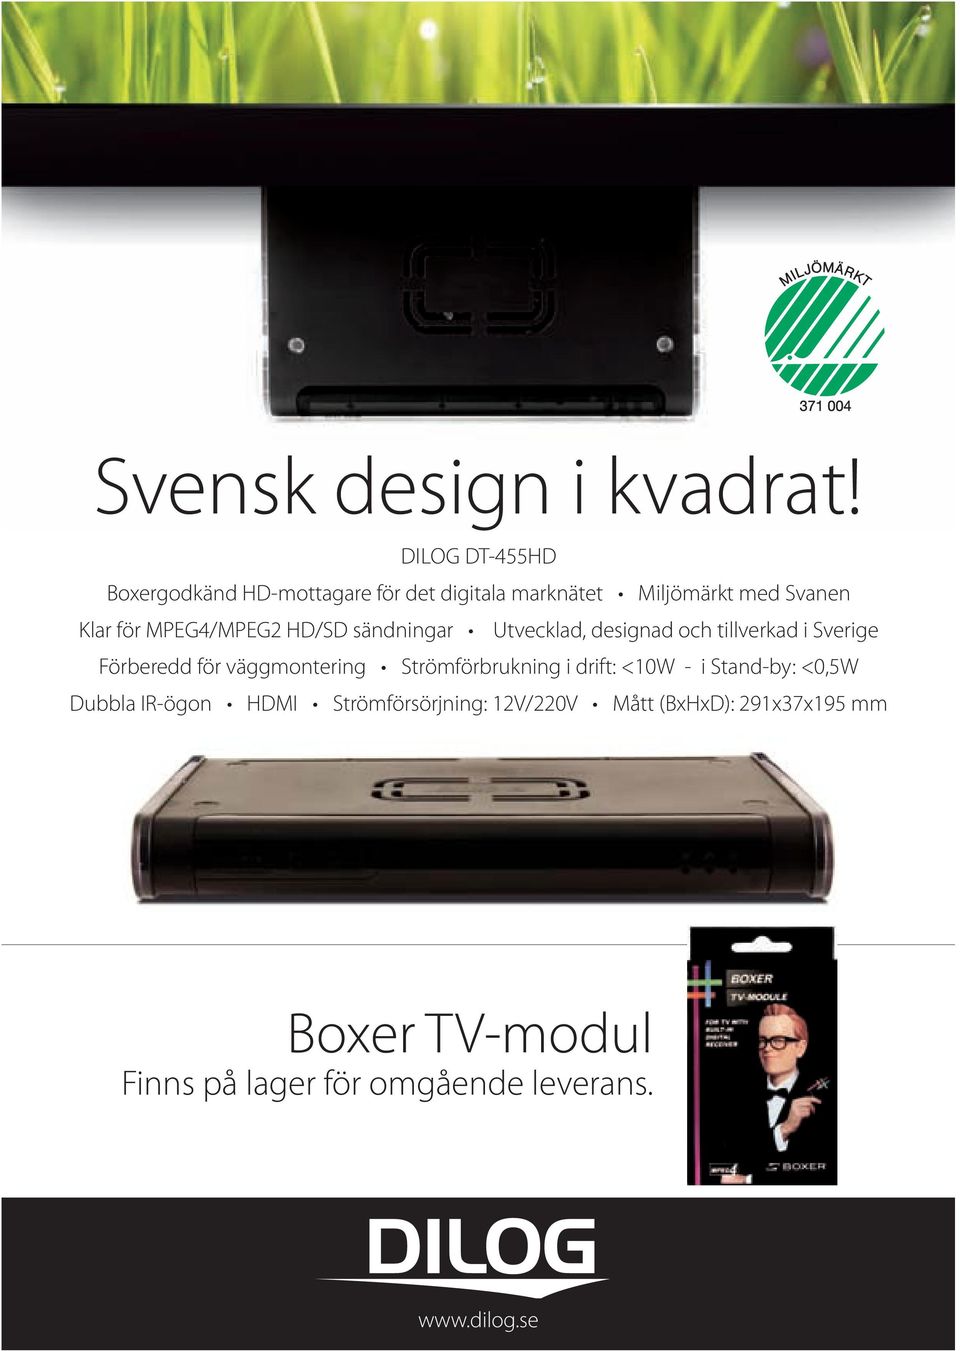 MPEg4/MPEg2 HD/SD sändningar Utvecklad, designad och tillverkad i Sverige Förberedd för väggmontering